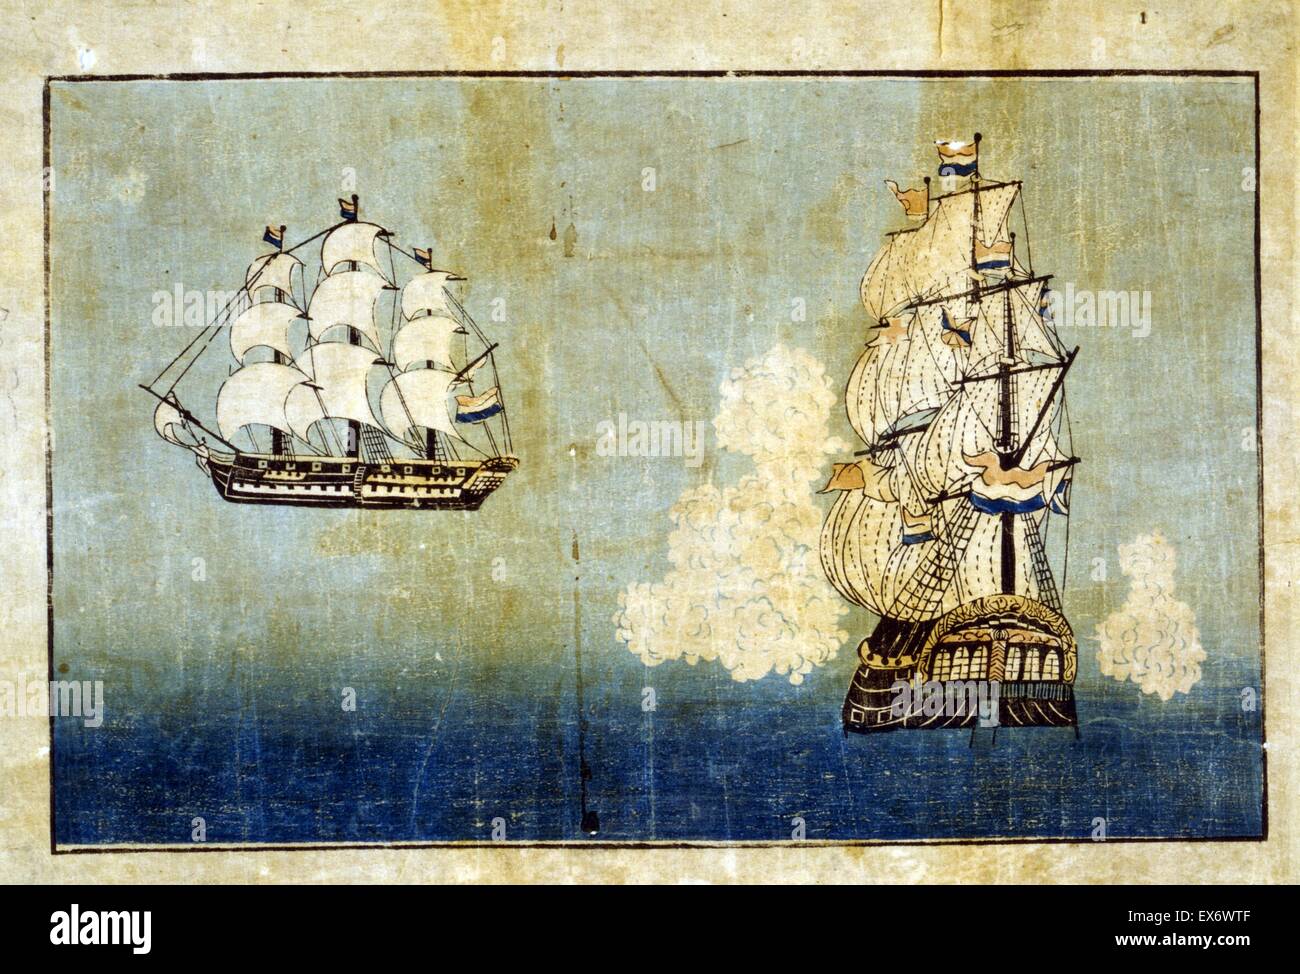 Orandasen -Traducción : barco holandés. Impresión japonesa muestra dos vistas, lateral y delantera de un barco holandés. Entre 1850 y 1900. Foto de stock